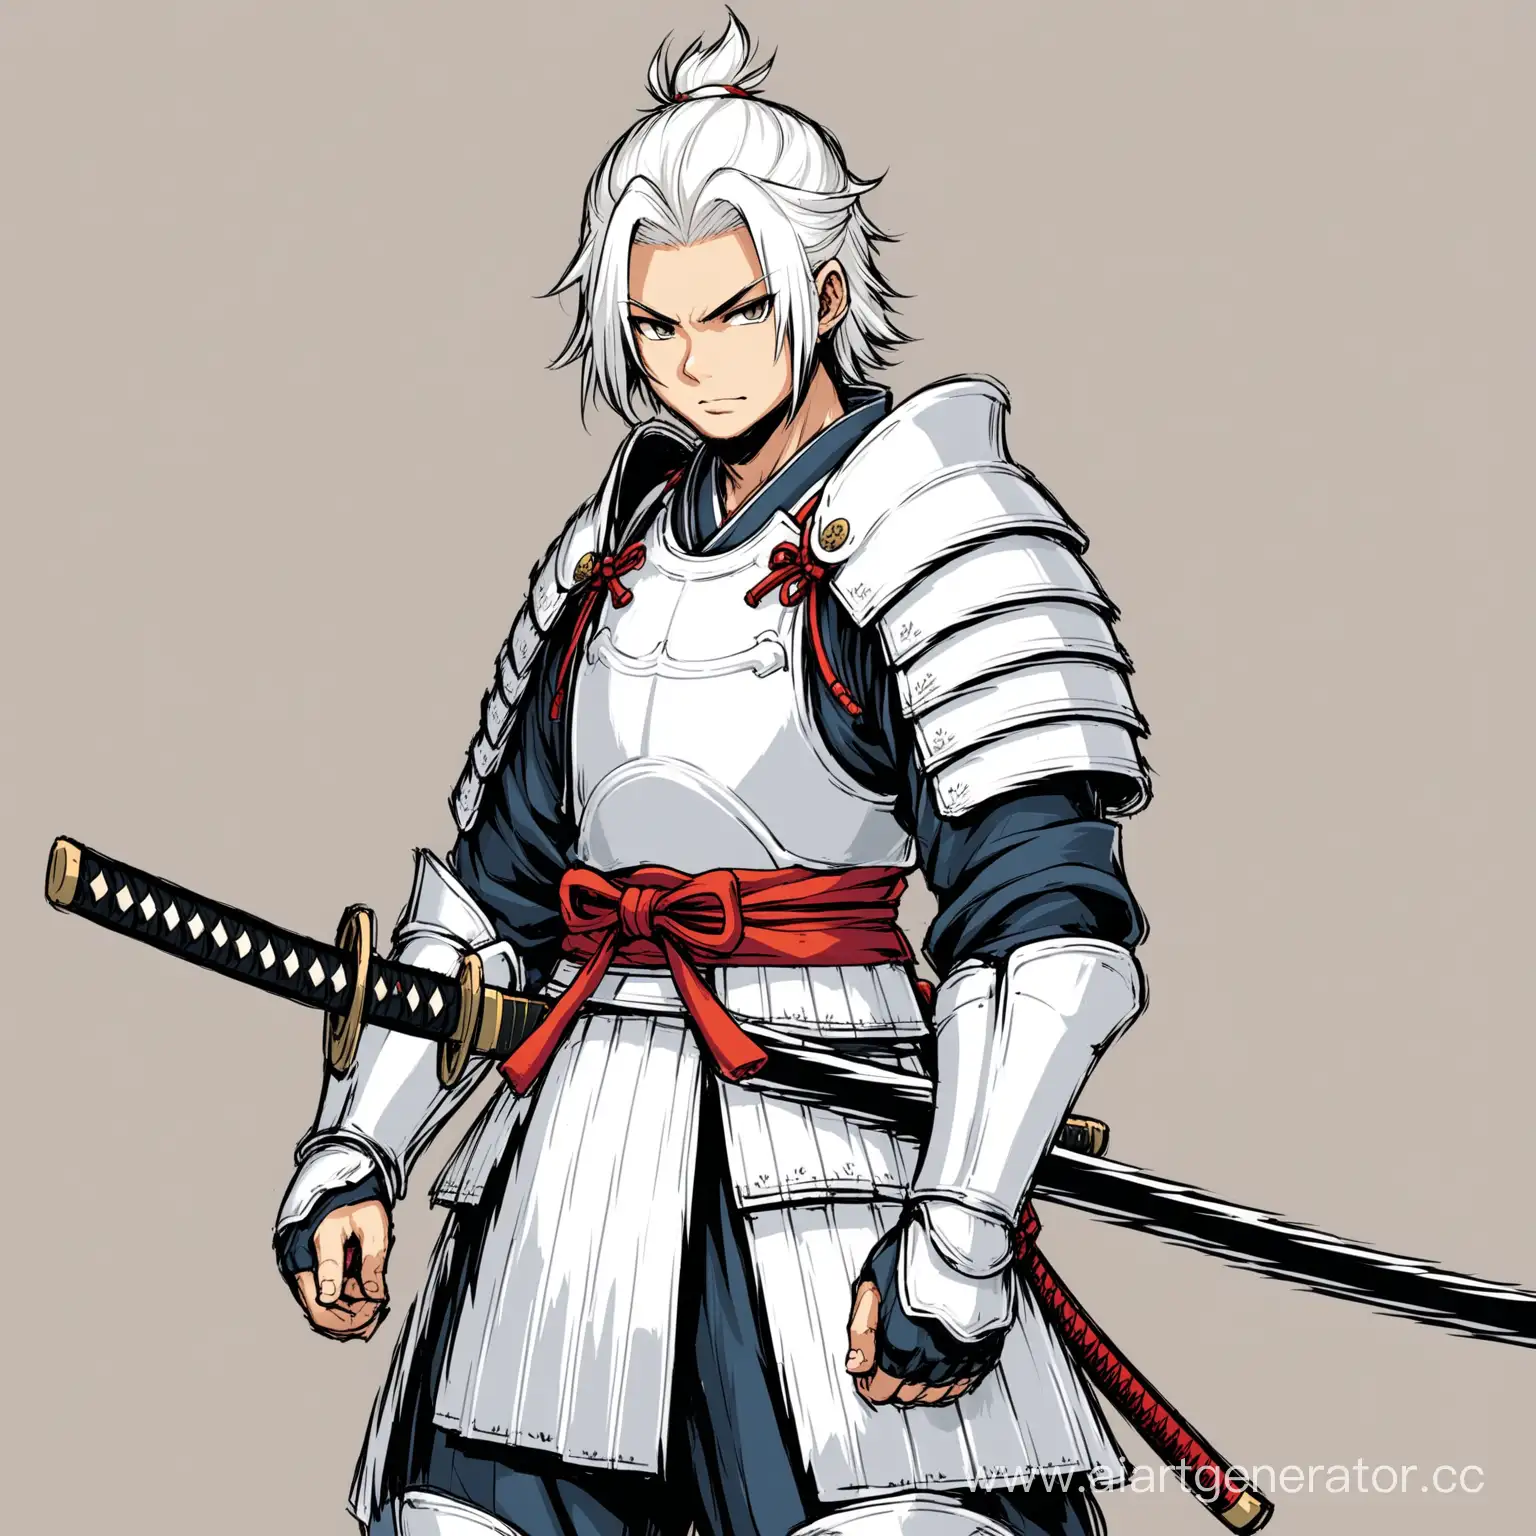 Нарисуй мальчика самурая в белой броне и с катаной в руке. У него должны быть белые волосы. 